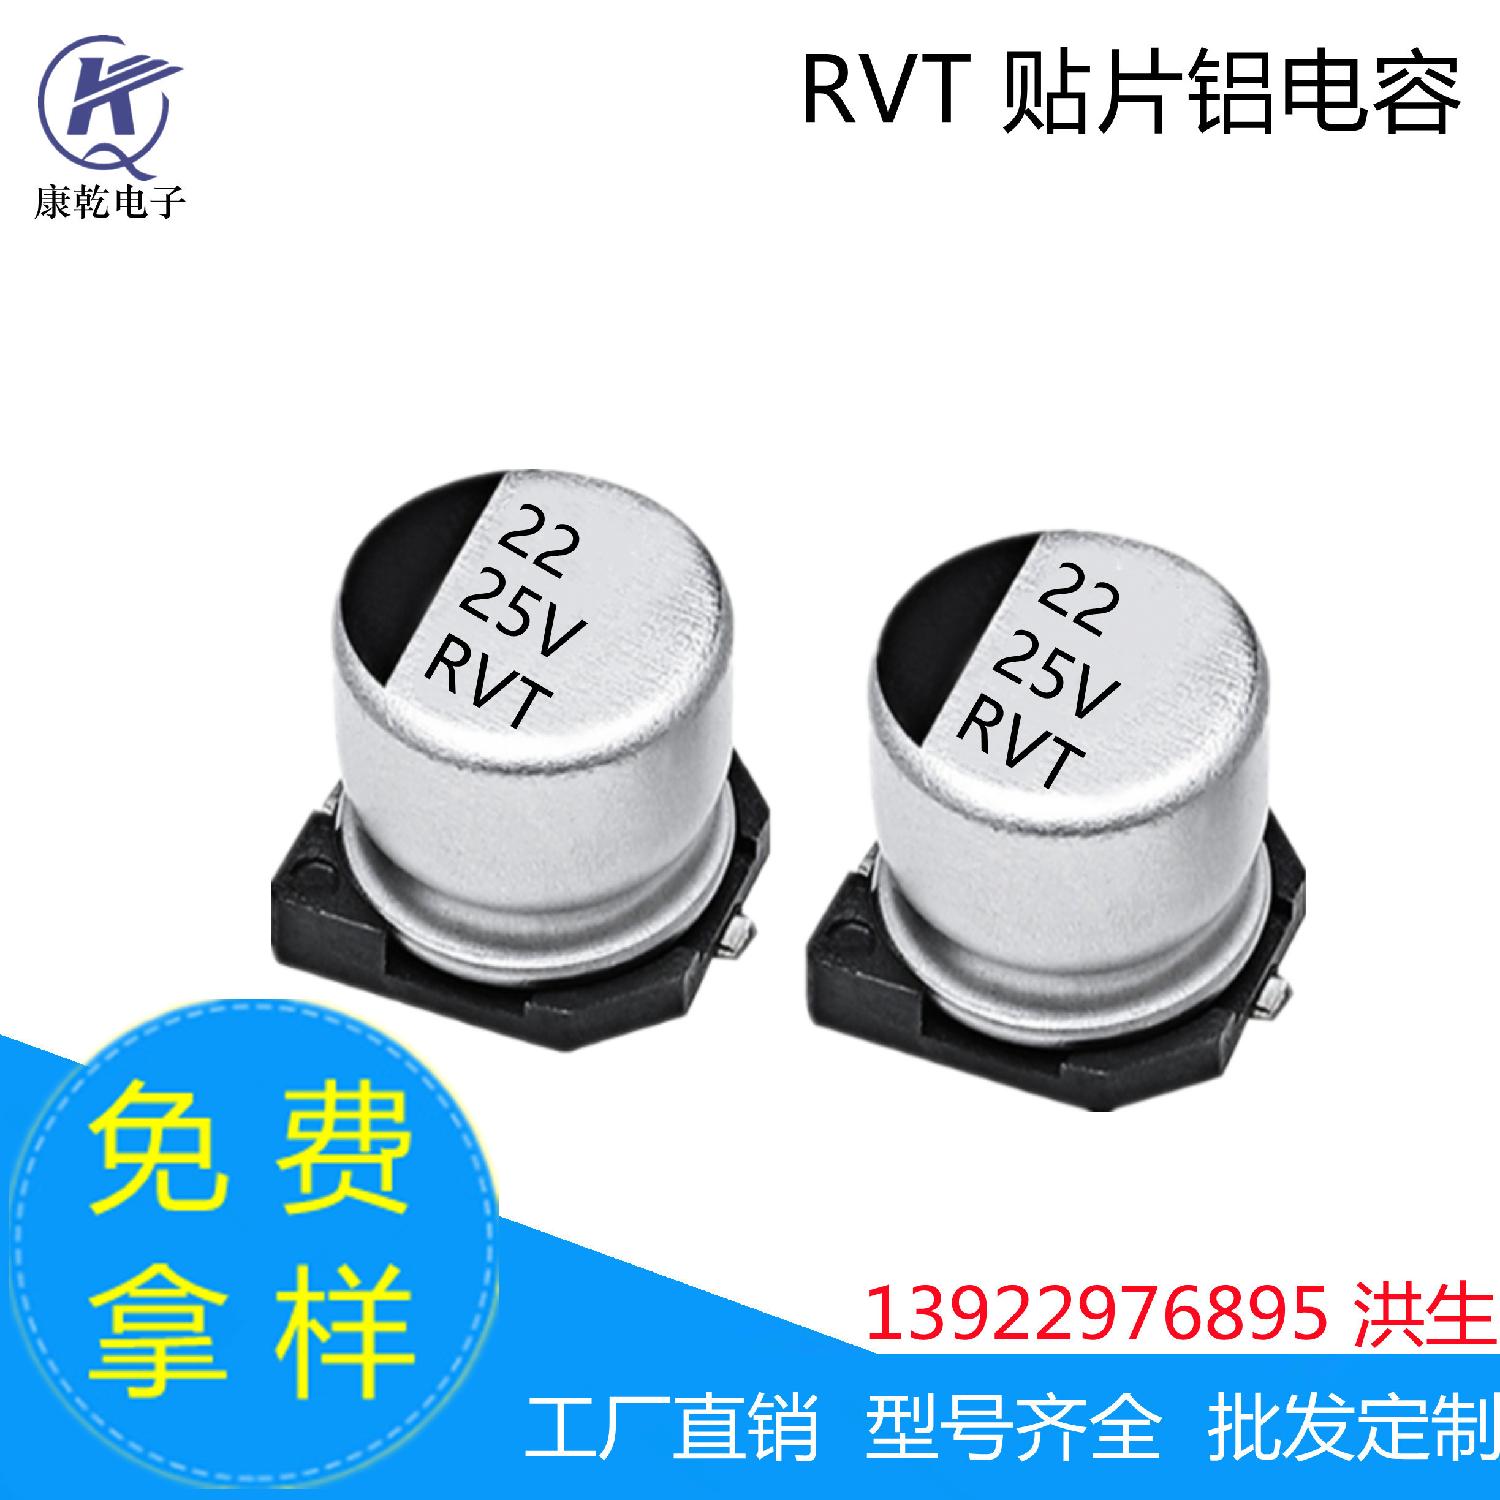 厂家现货 RVT 贴片铝电解电容器22uF 25V  5*5.4mm  6.3*5.4mm 22uF 25V